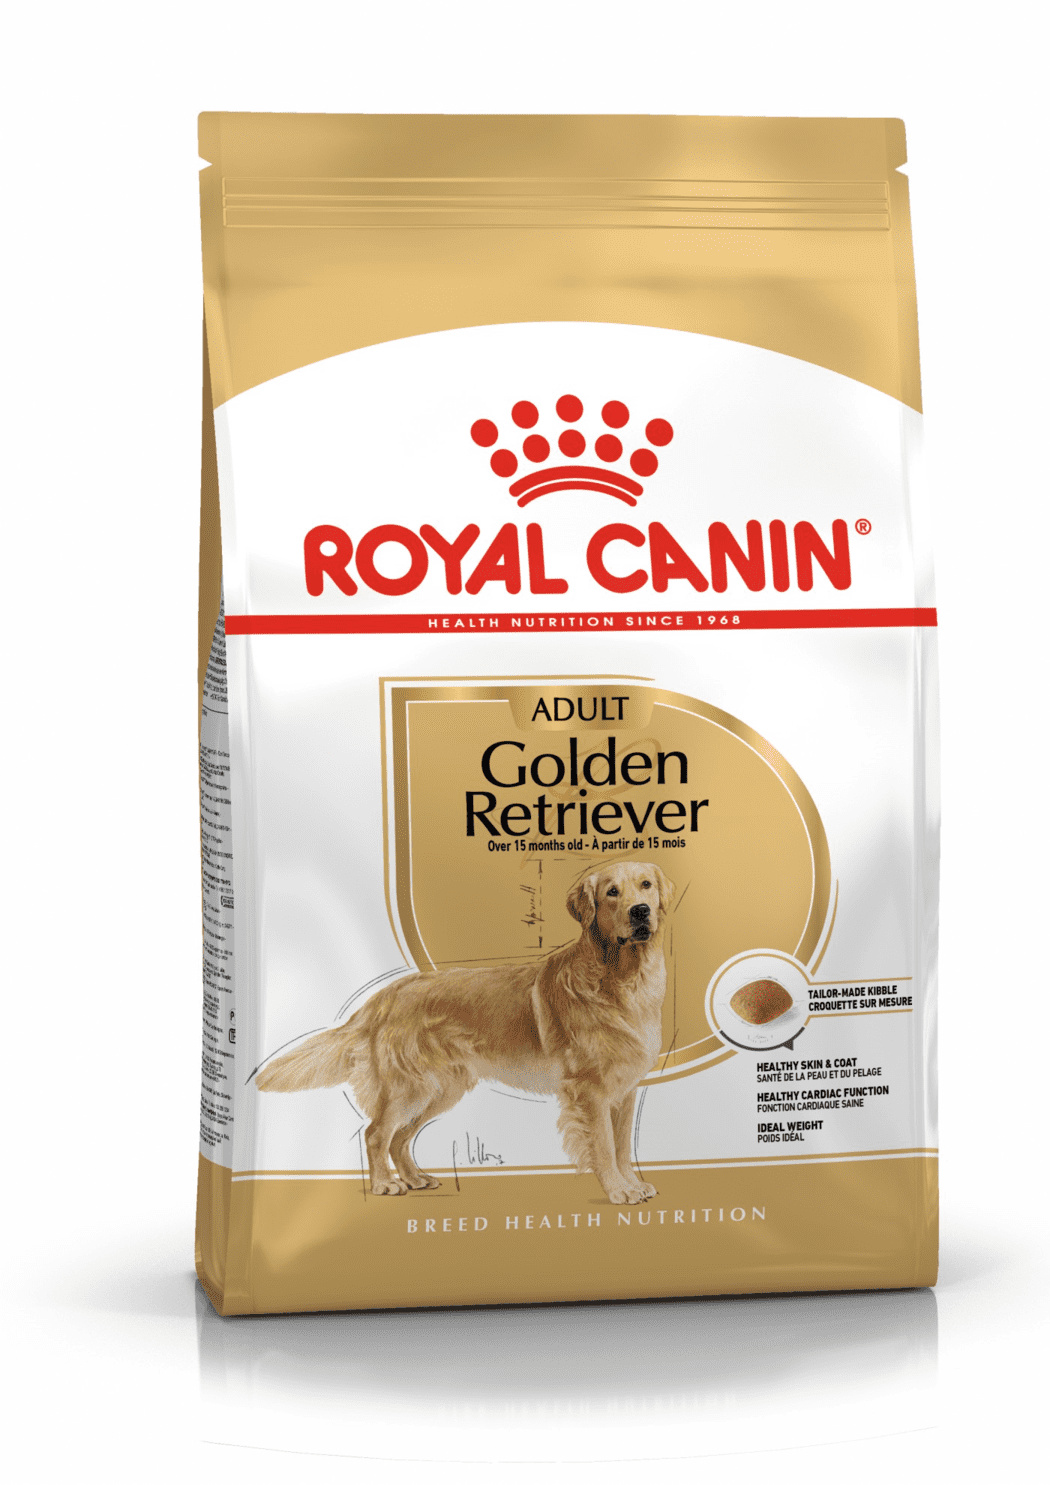 Royal Canin Корм Royal Canin для взрослого голден ретривера с 15 месяцев (3 кг) royal canin корм royal canin для взрослого голден ретривера с 15 месяцев 3 кг